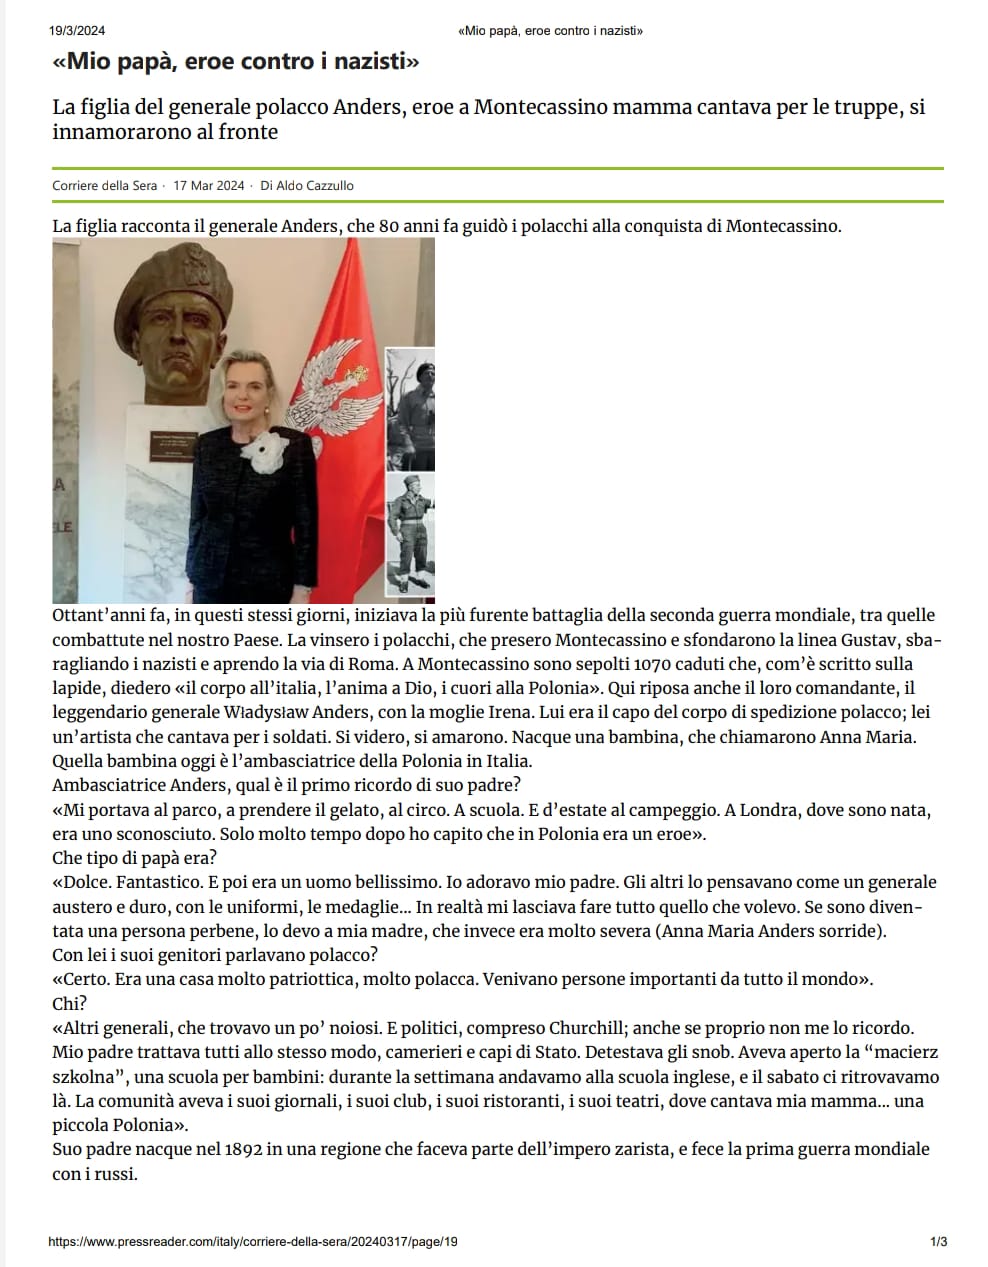 Corriere della Sera: L’intervista con l’Ambasciatore Anna Maria Anders